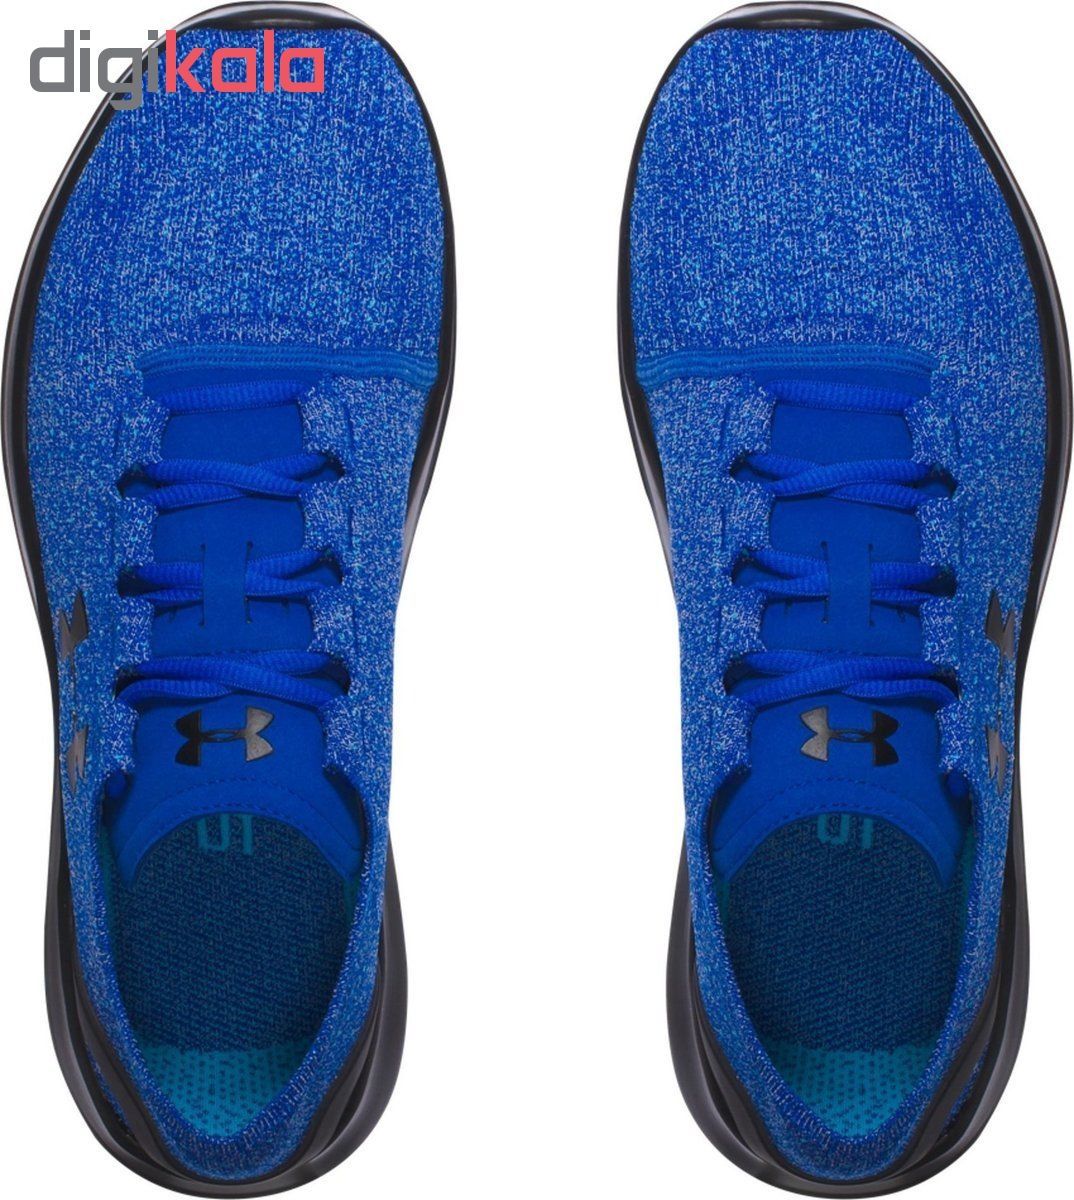  کفش مخصوص دویدن مردانه آندر آرمور مدل SpeedForm Slingride TRI